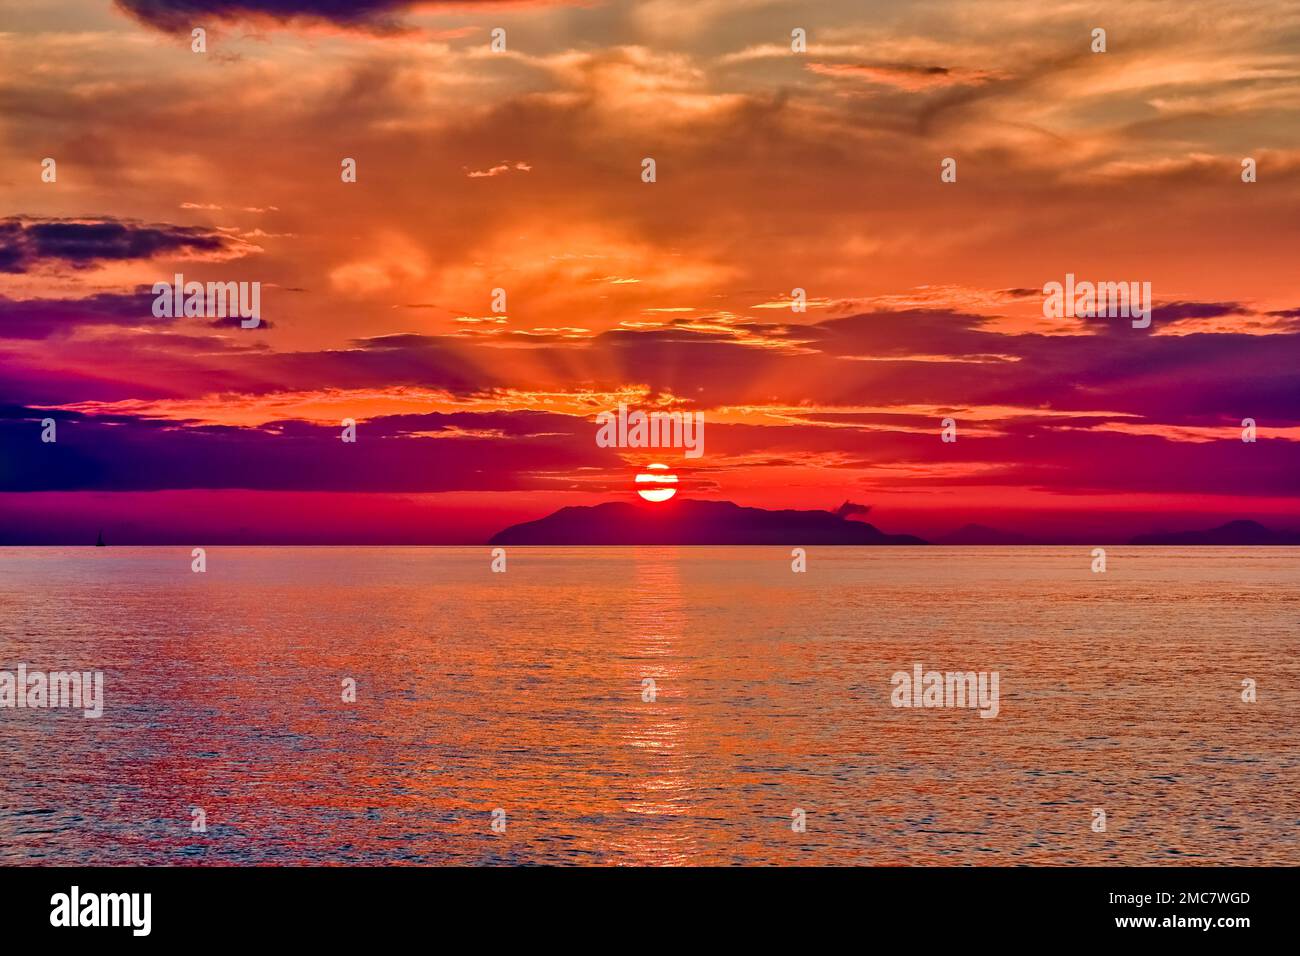 Sonnenuntergang über der Insel Vulcano, einer Insel der Lipari-Inseln im Tyrrhenischen Meer vor der Nordküste Siziliens. Stockfoto